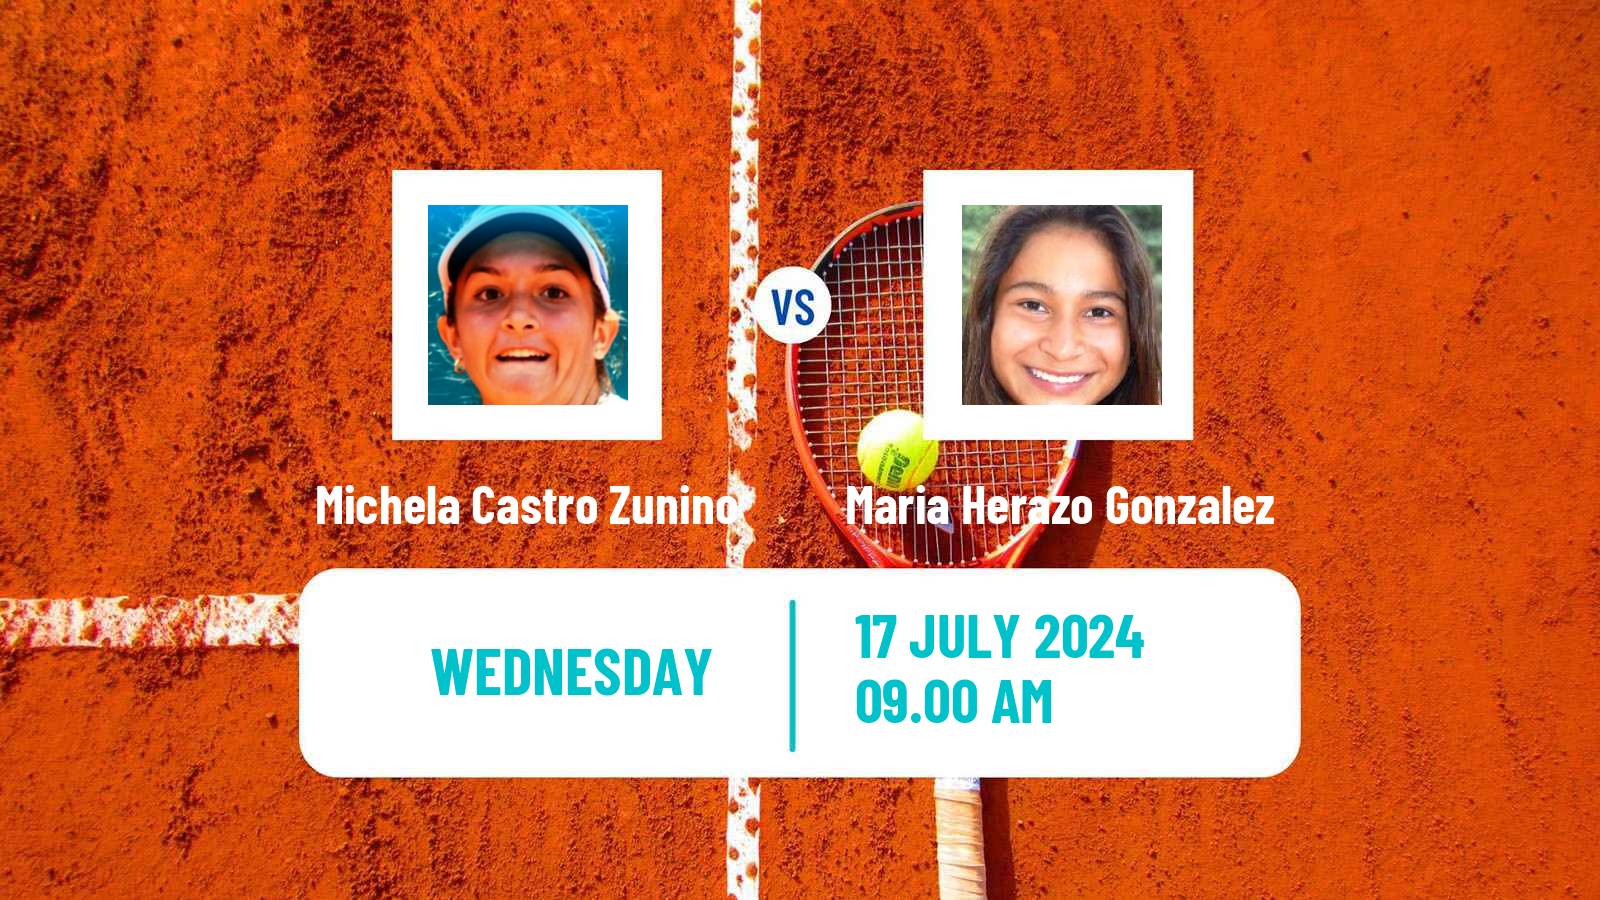 Tennis ITF W15 Lujan 2 Women Michela Castro Zunino - Maria Herazo Gonzalez